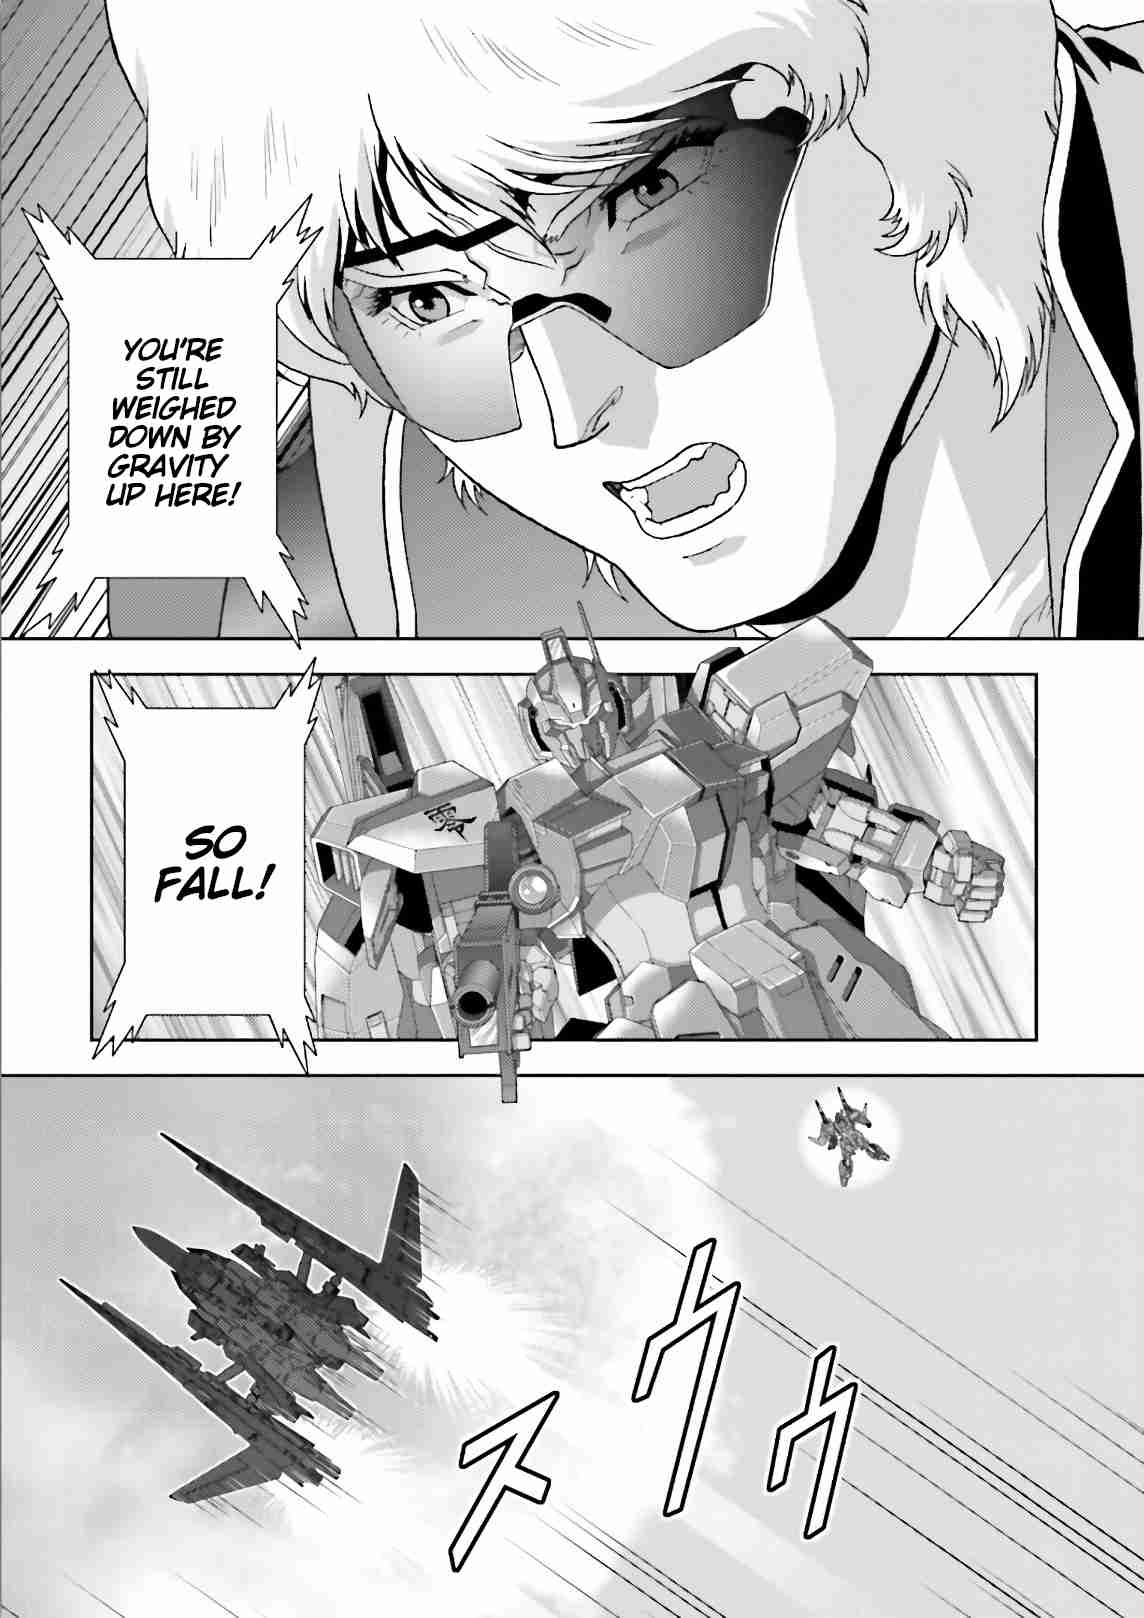 Mobile Suit Zeta Gundam - Define 59